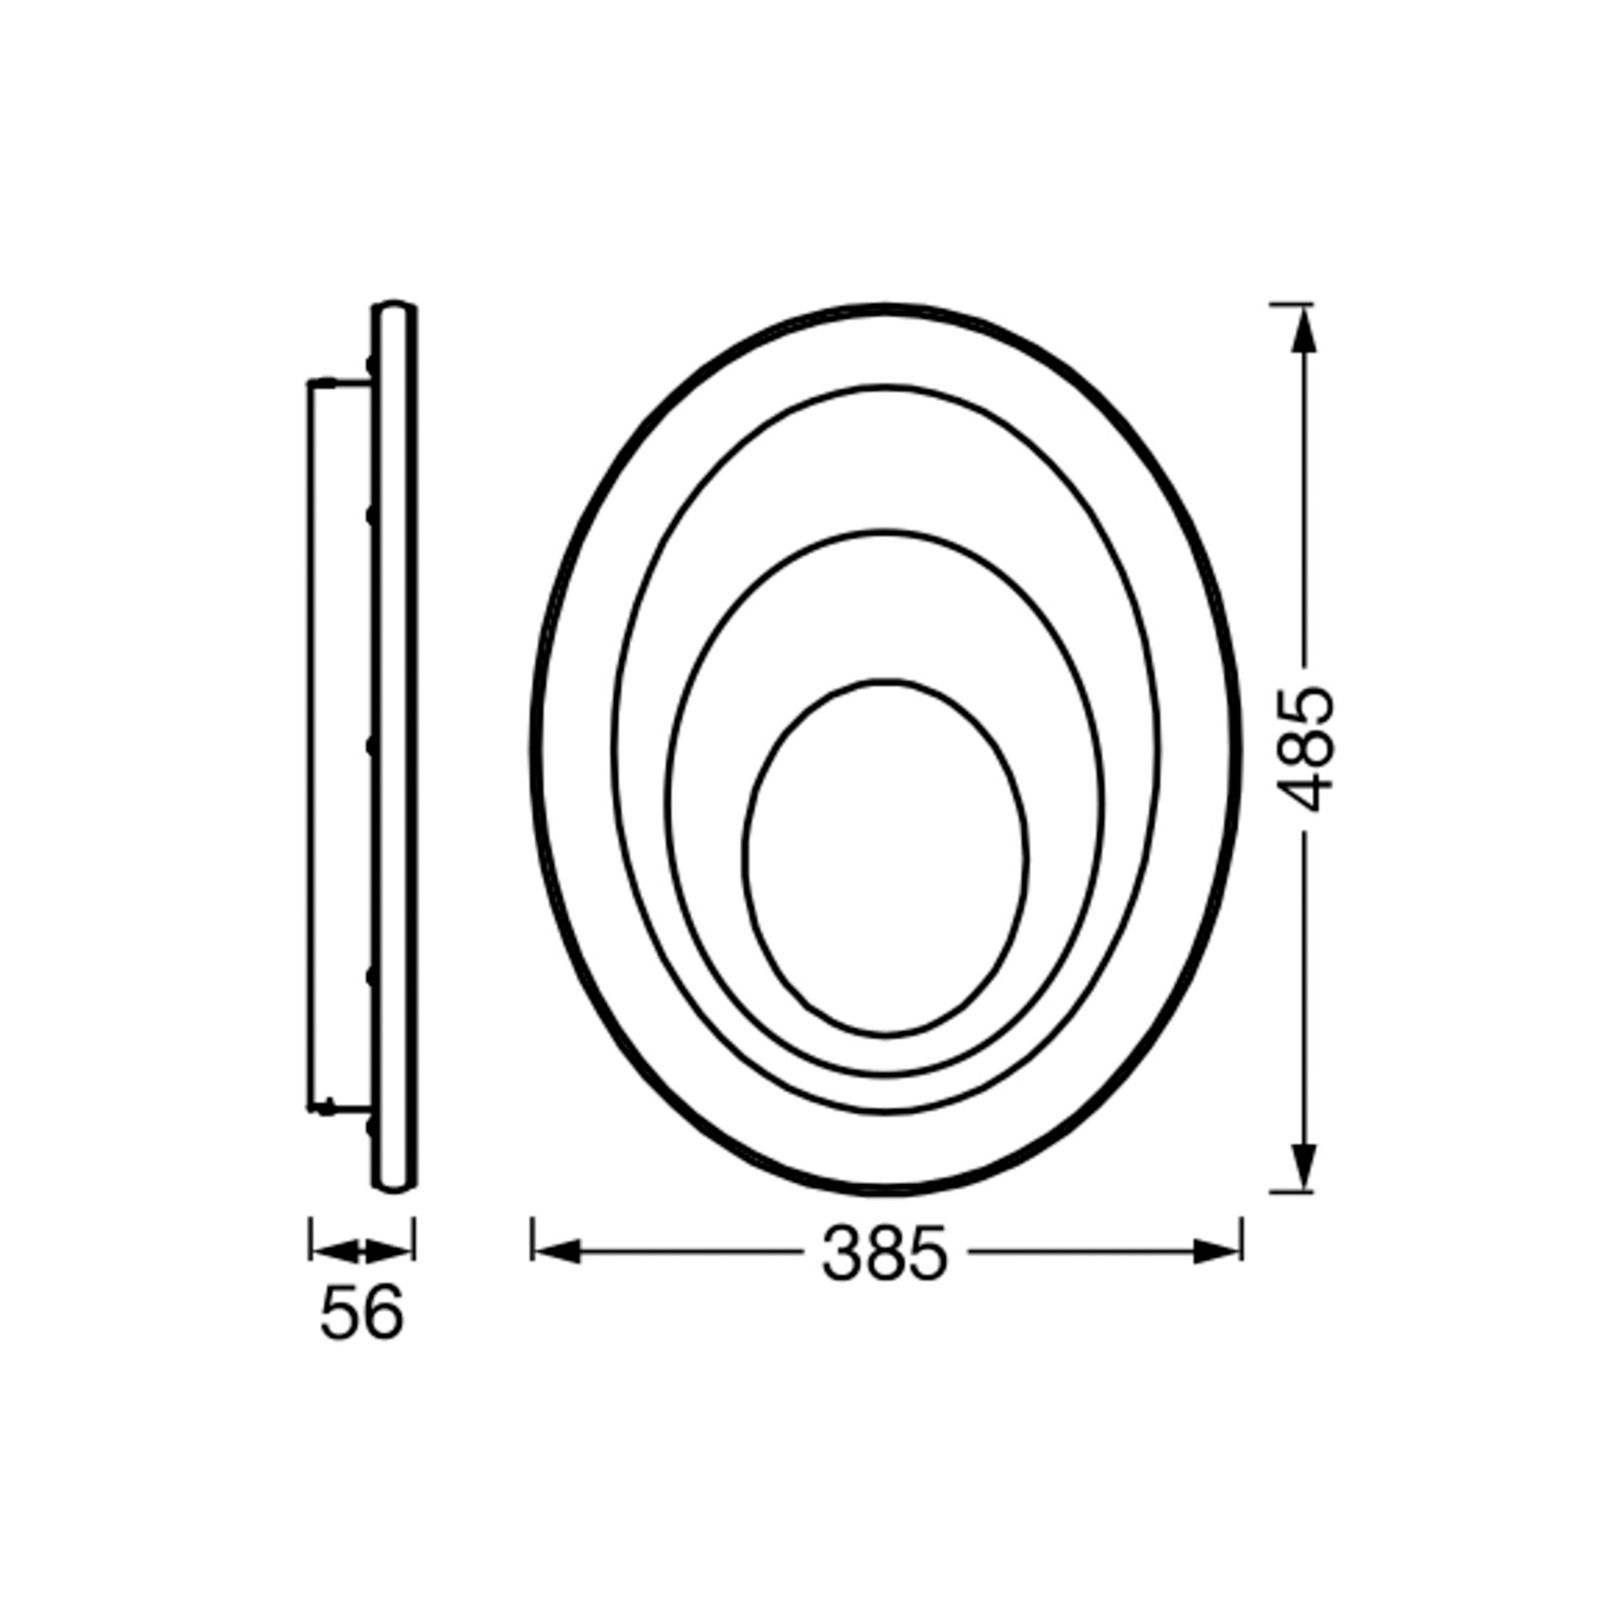 LEDVANCE Orbis Spiral Oval LED-Deckenlampe 49x39cm